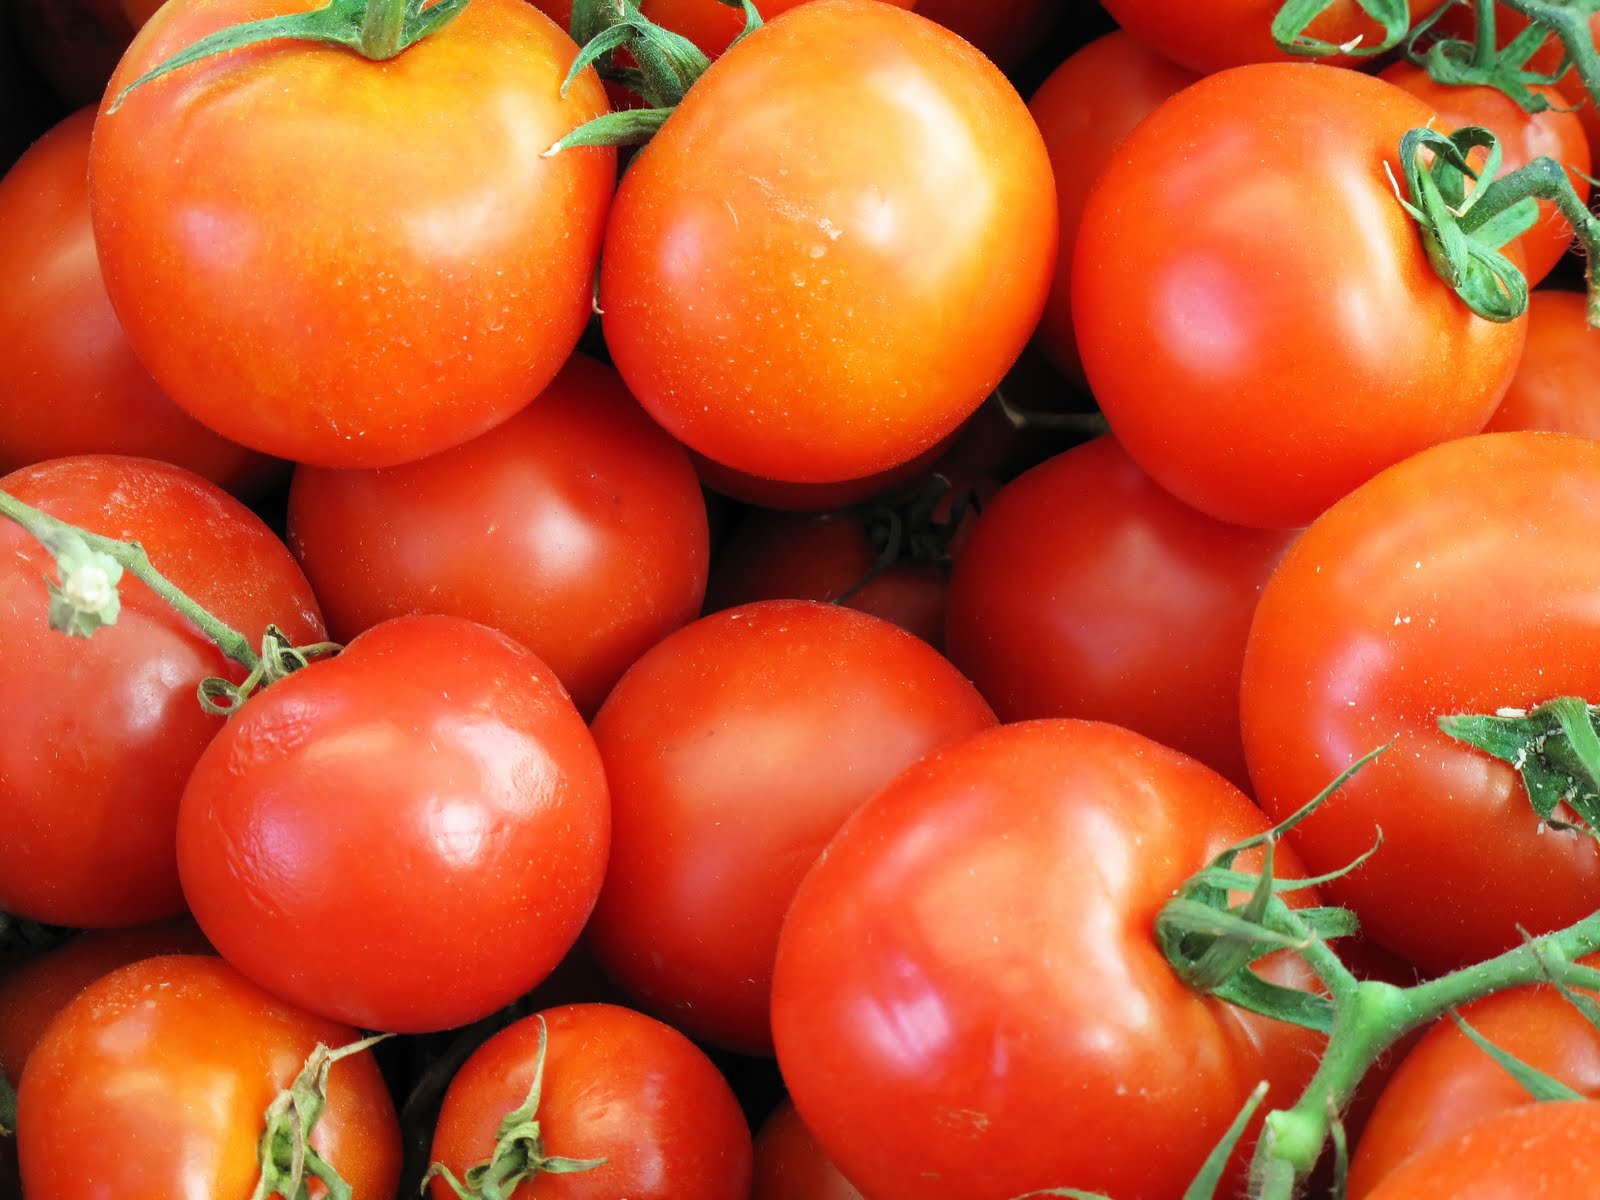 Η Τουρκία παρουσιάζει ντομάτες ως «δικής της παραγωγής» ενώ είναι άλλων χωρών